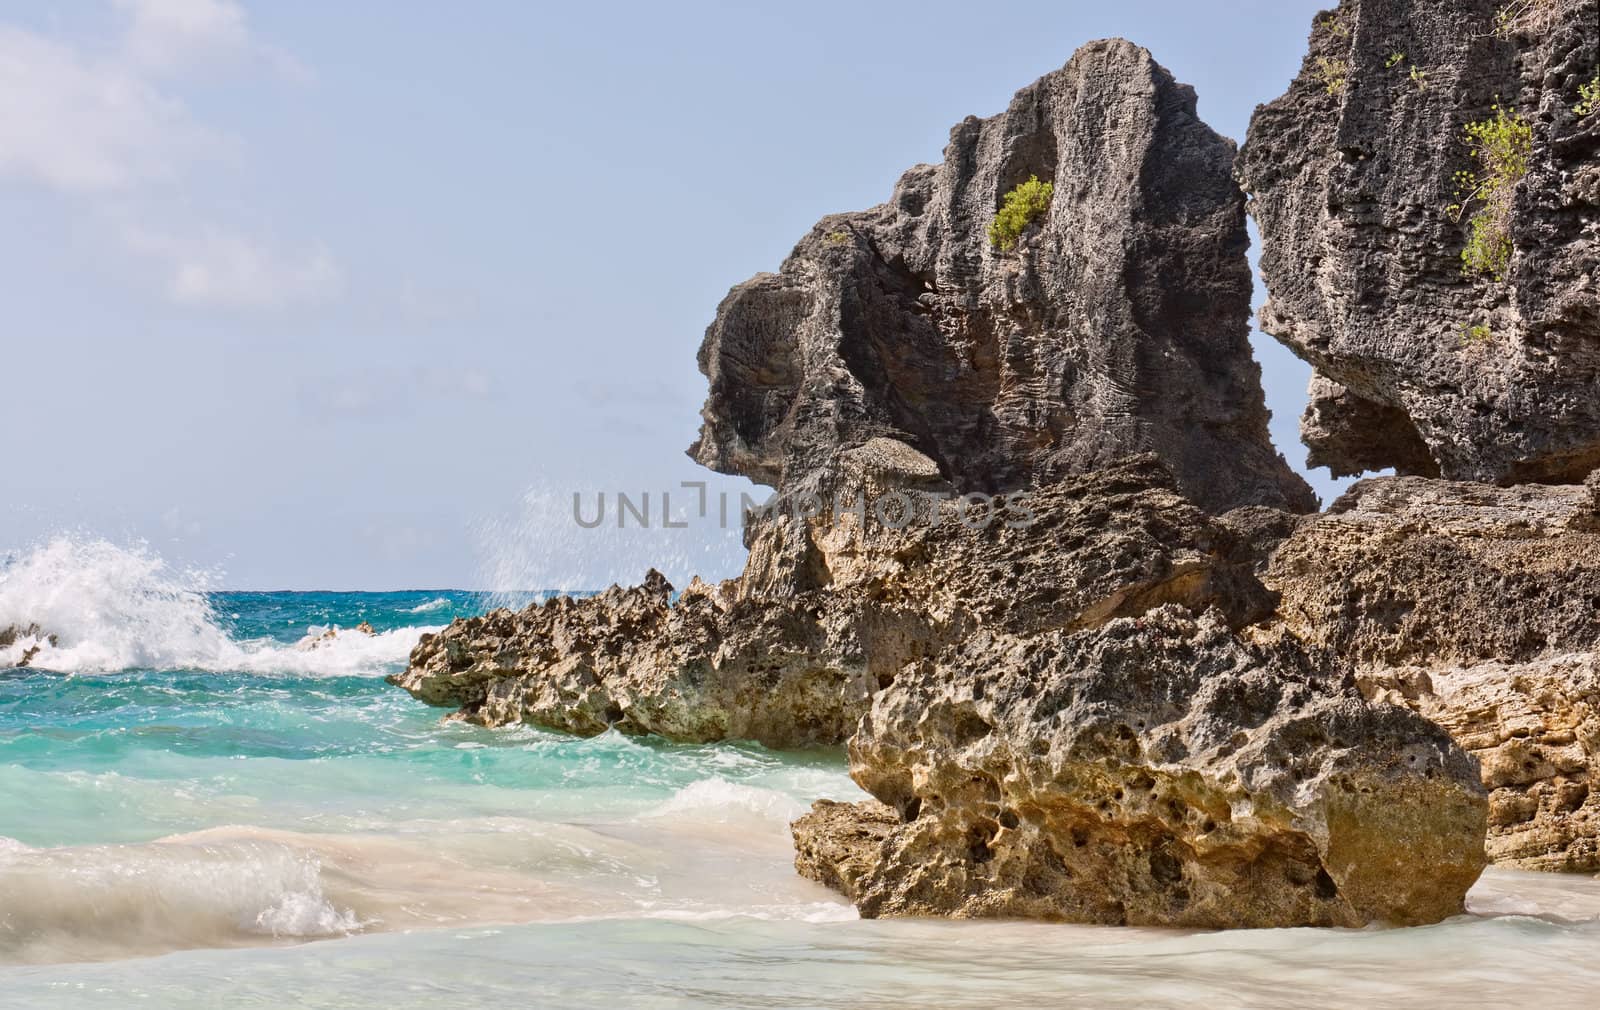 Large rocks, or boulders, in the atlantic ocean in the coastal waters of Bermuda. Photo was taken at Horseshoe Bay in Bermuda.